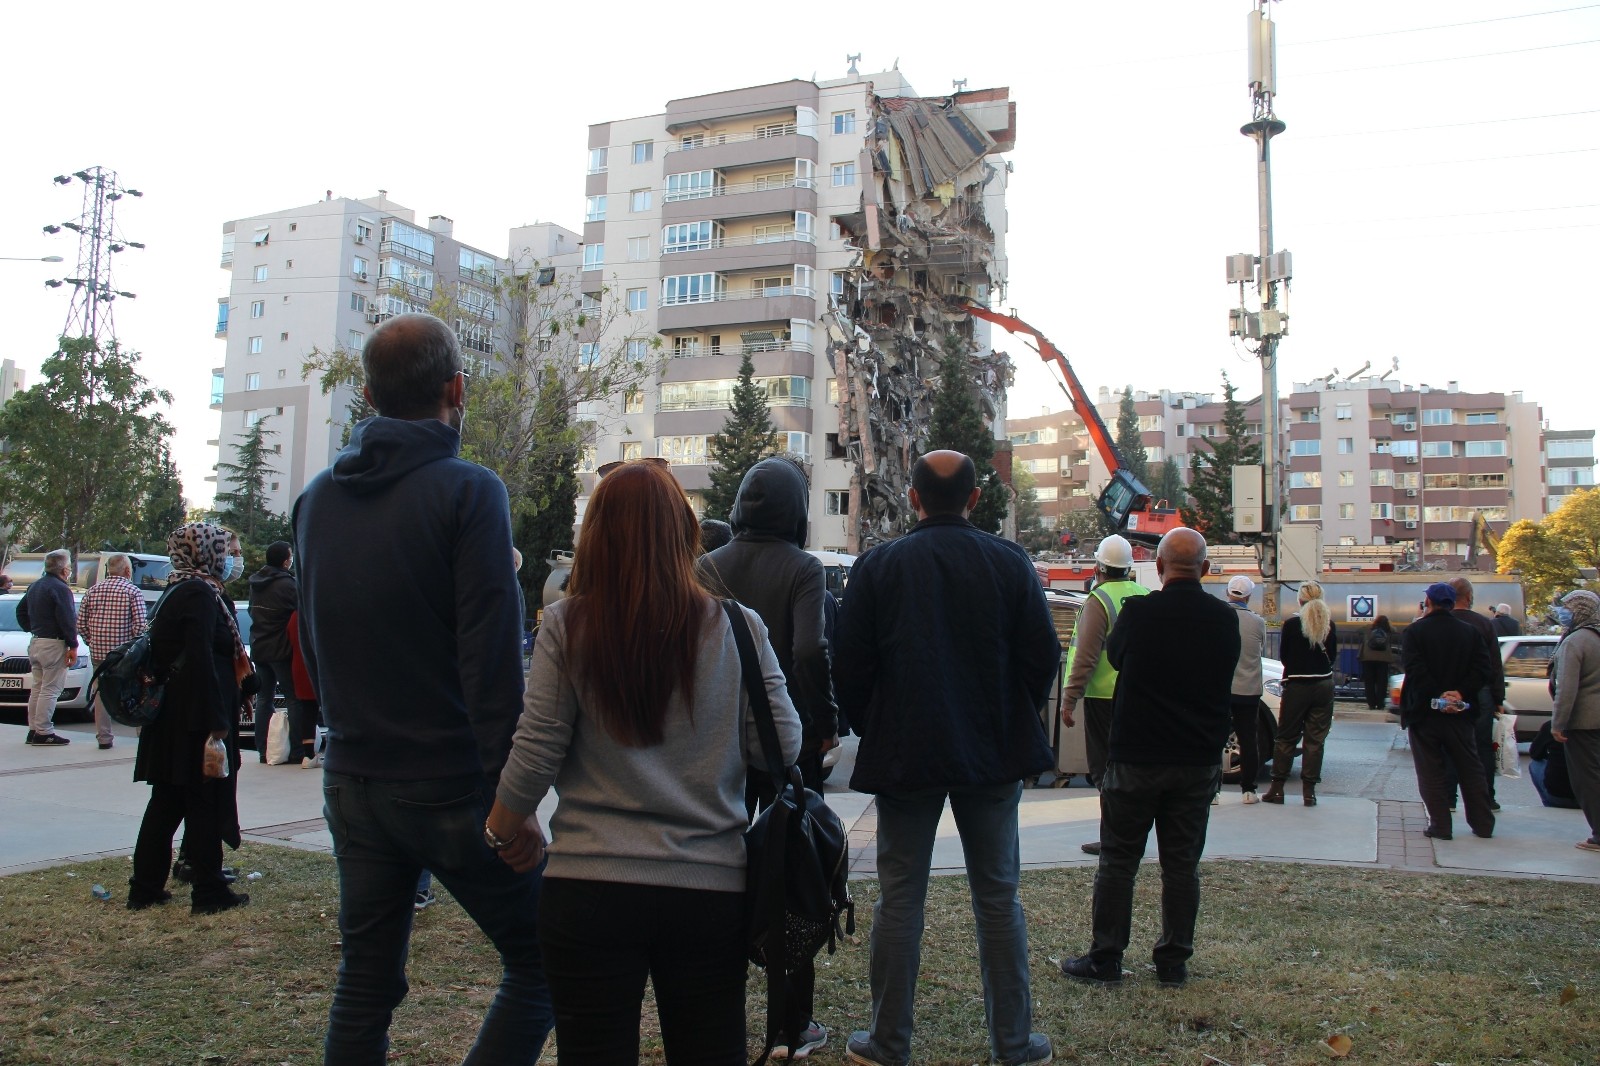 İzmir depreminde 11 kişinin öldüğü binanın mimarına tahliye